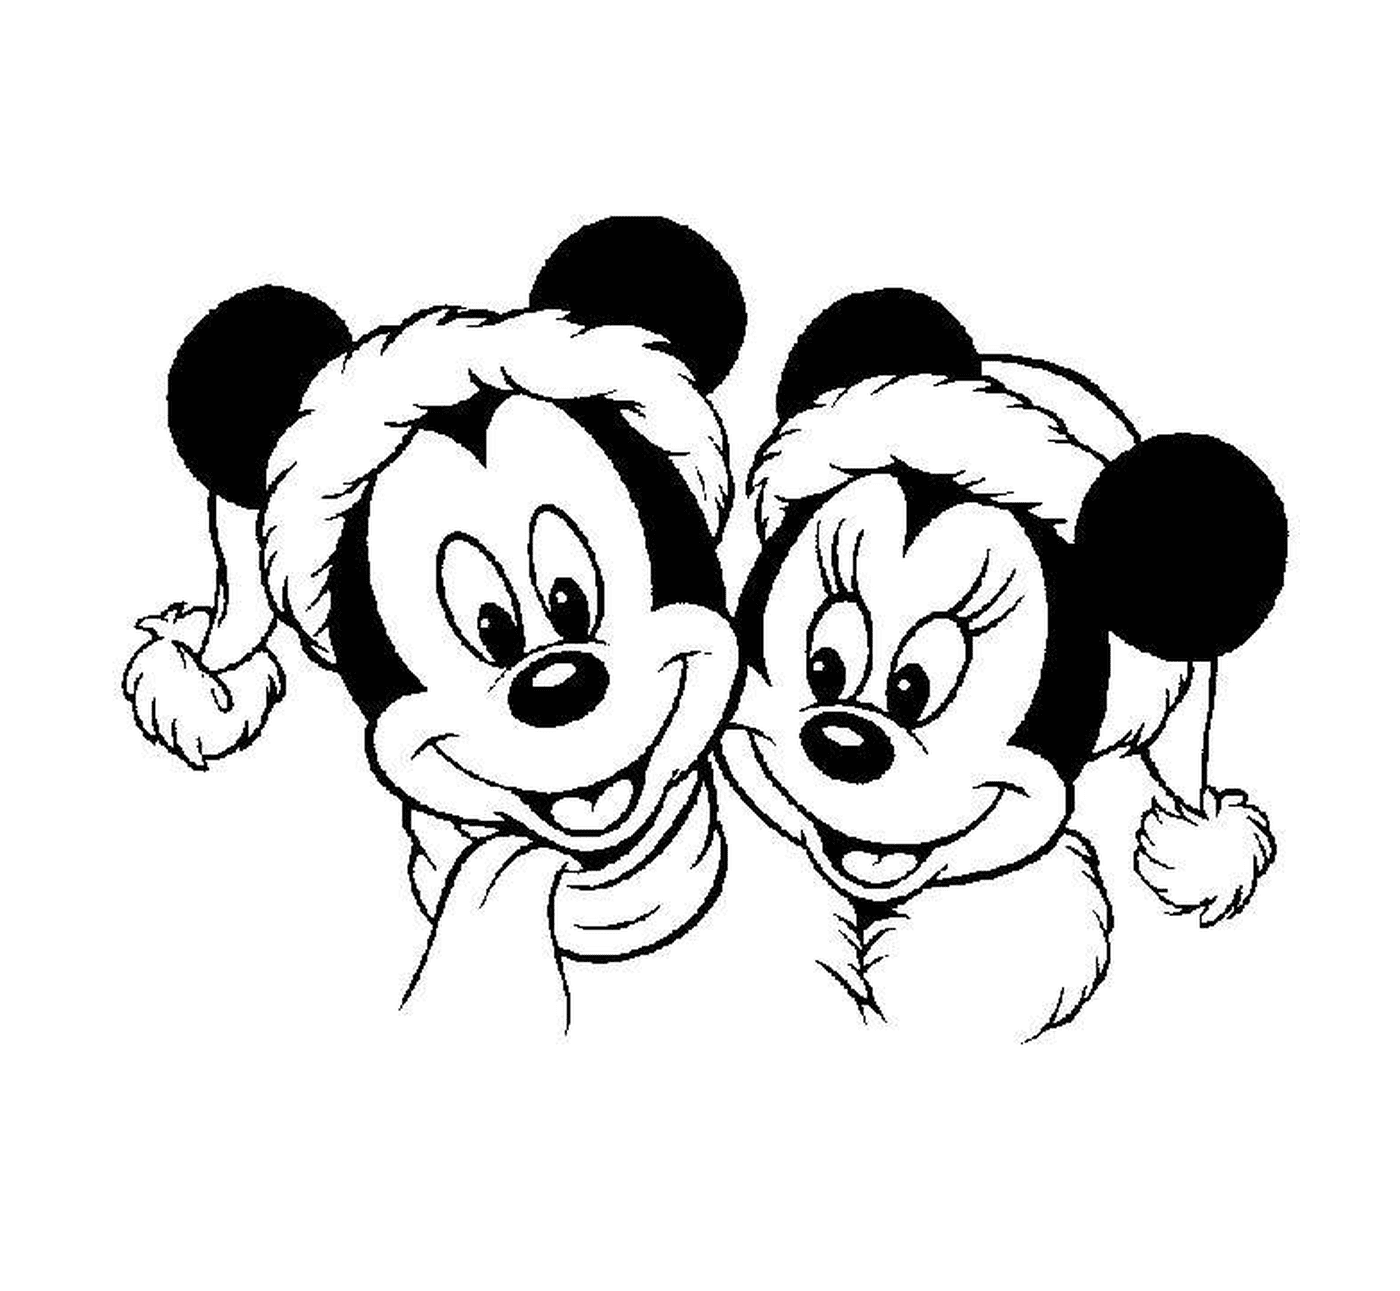  Mickey y Minnie sonriendo 